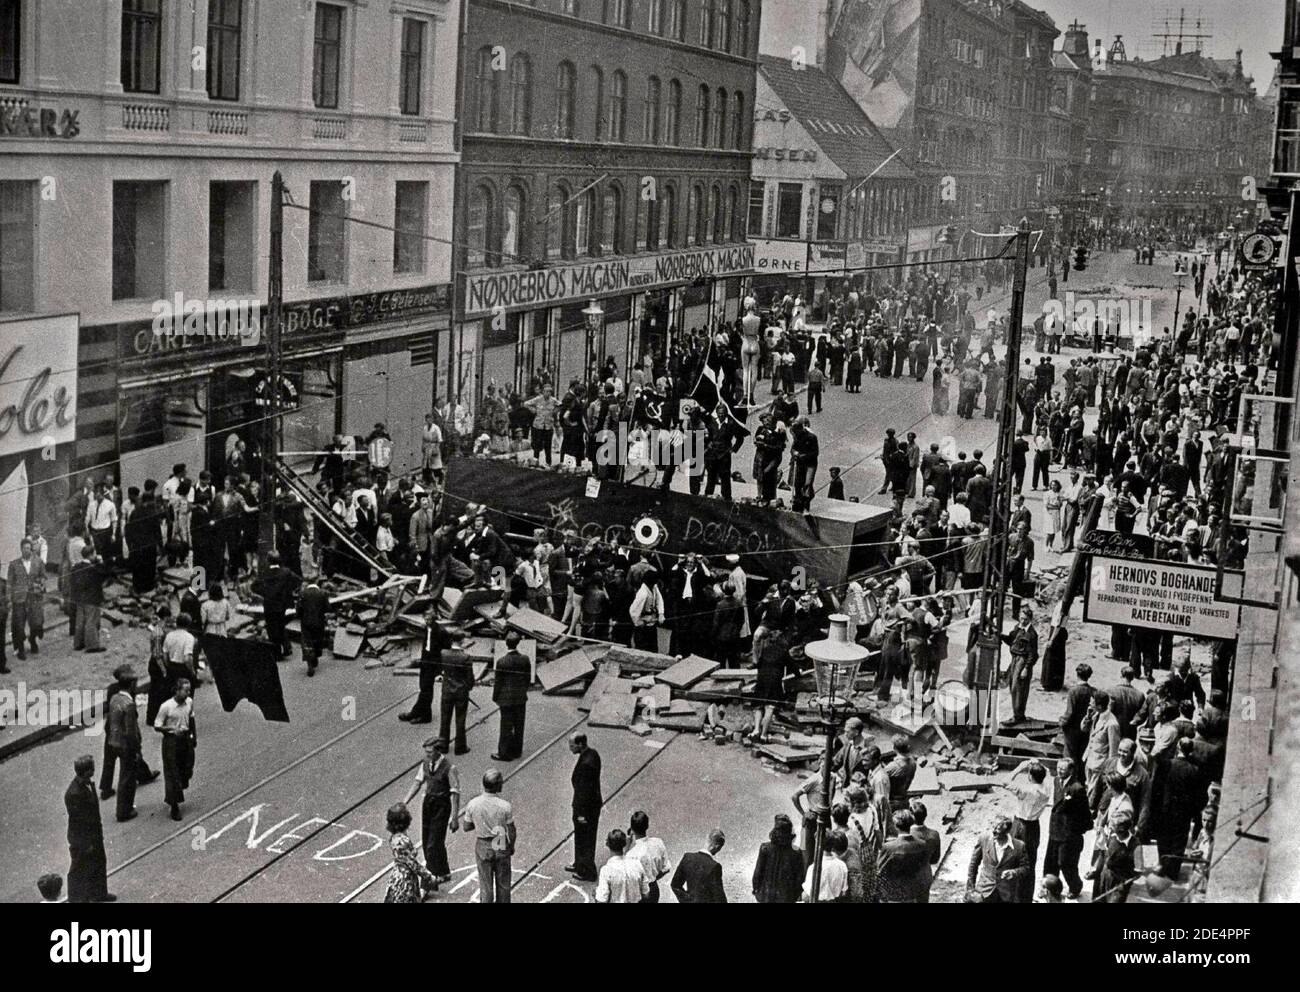 Ein historisches Foto eines Aufruhrs von 1944 in Norrebro, Kopenhagen während der deutschen Besetzung Dänemarks. Stockfoto